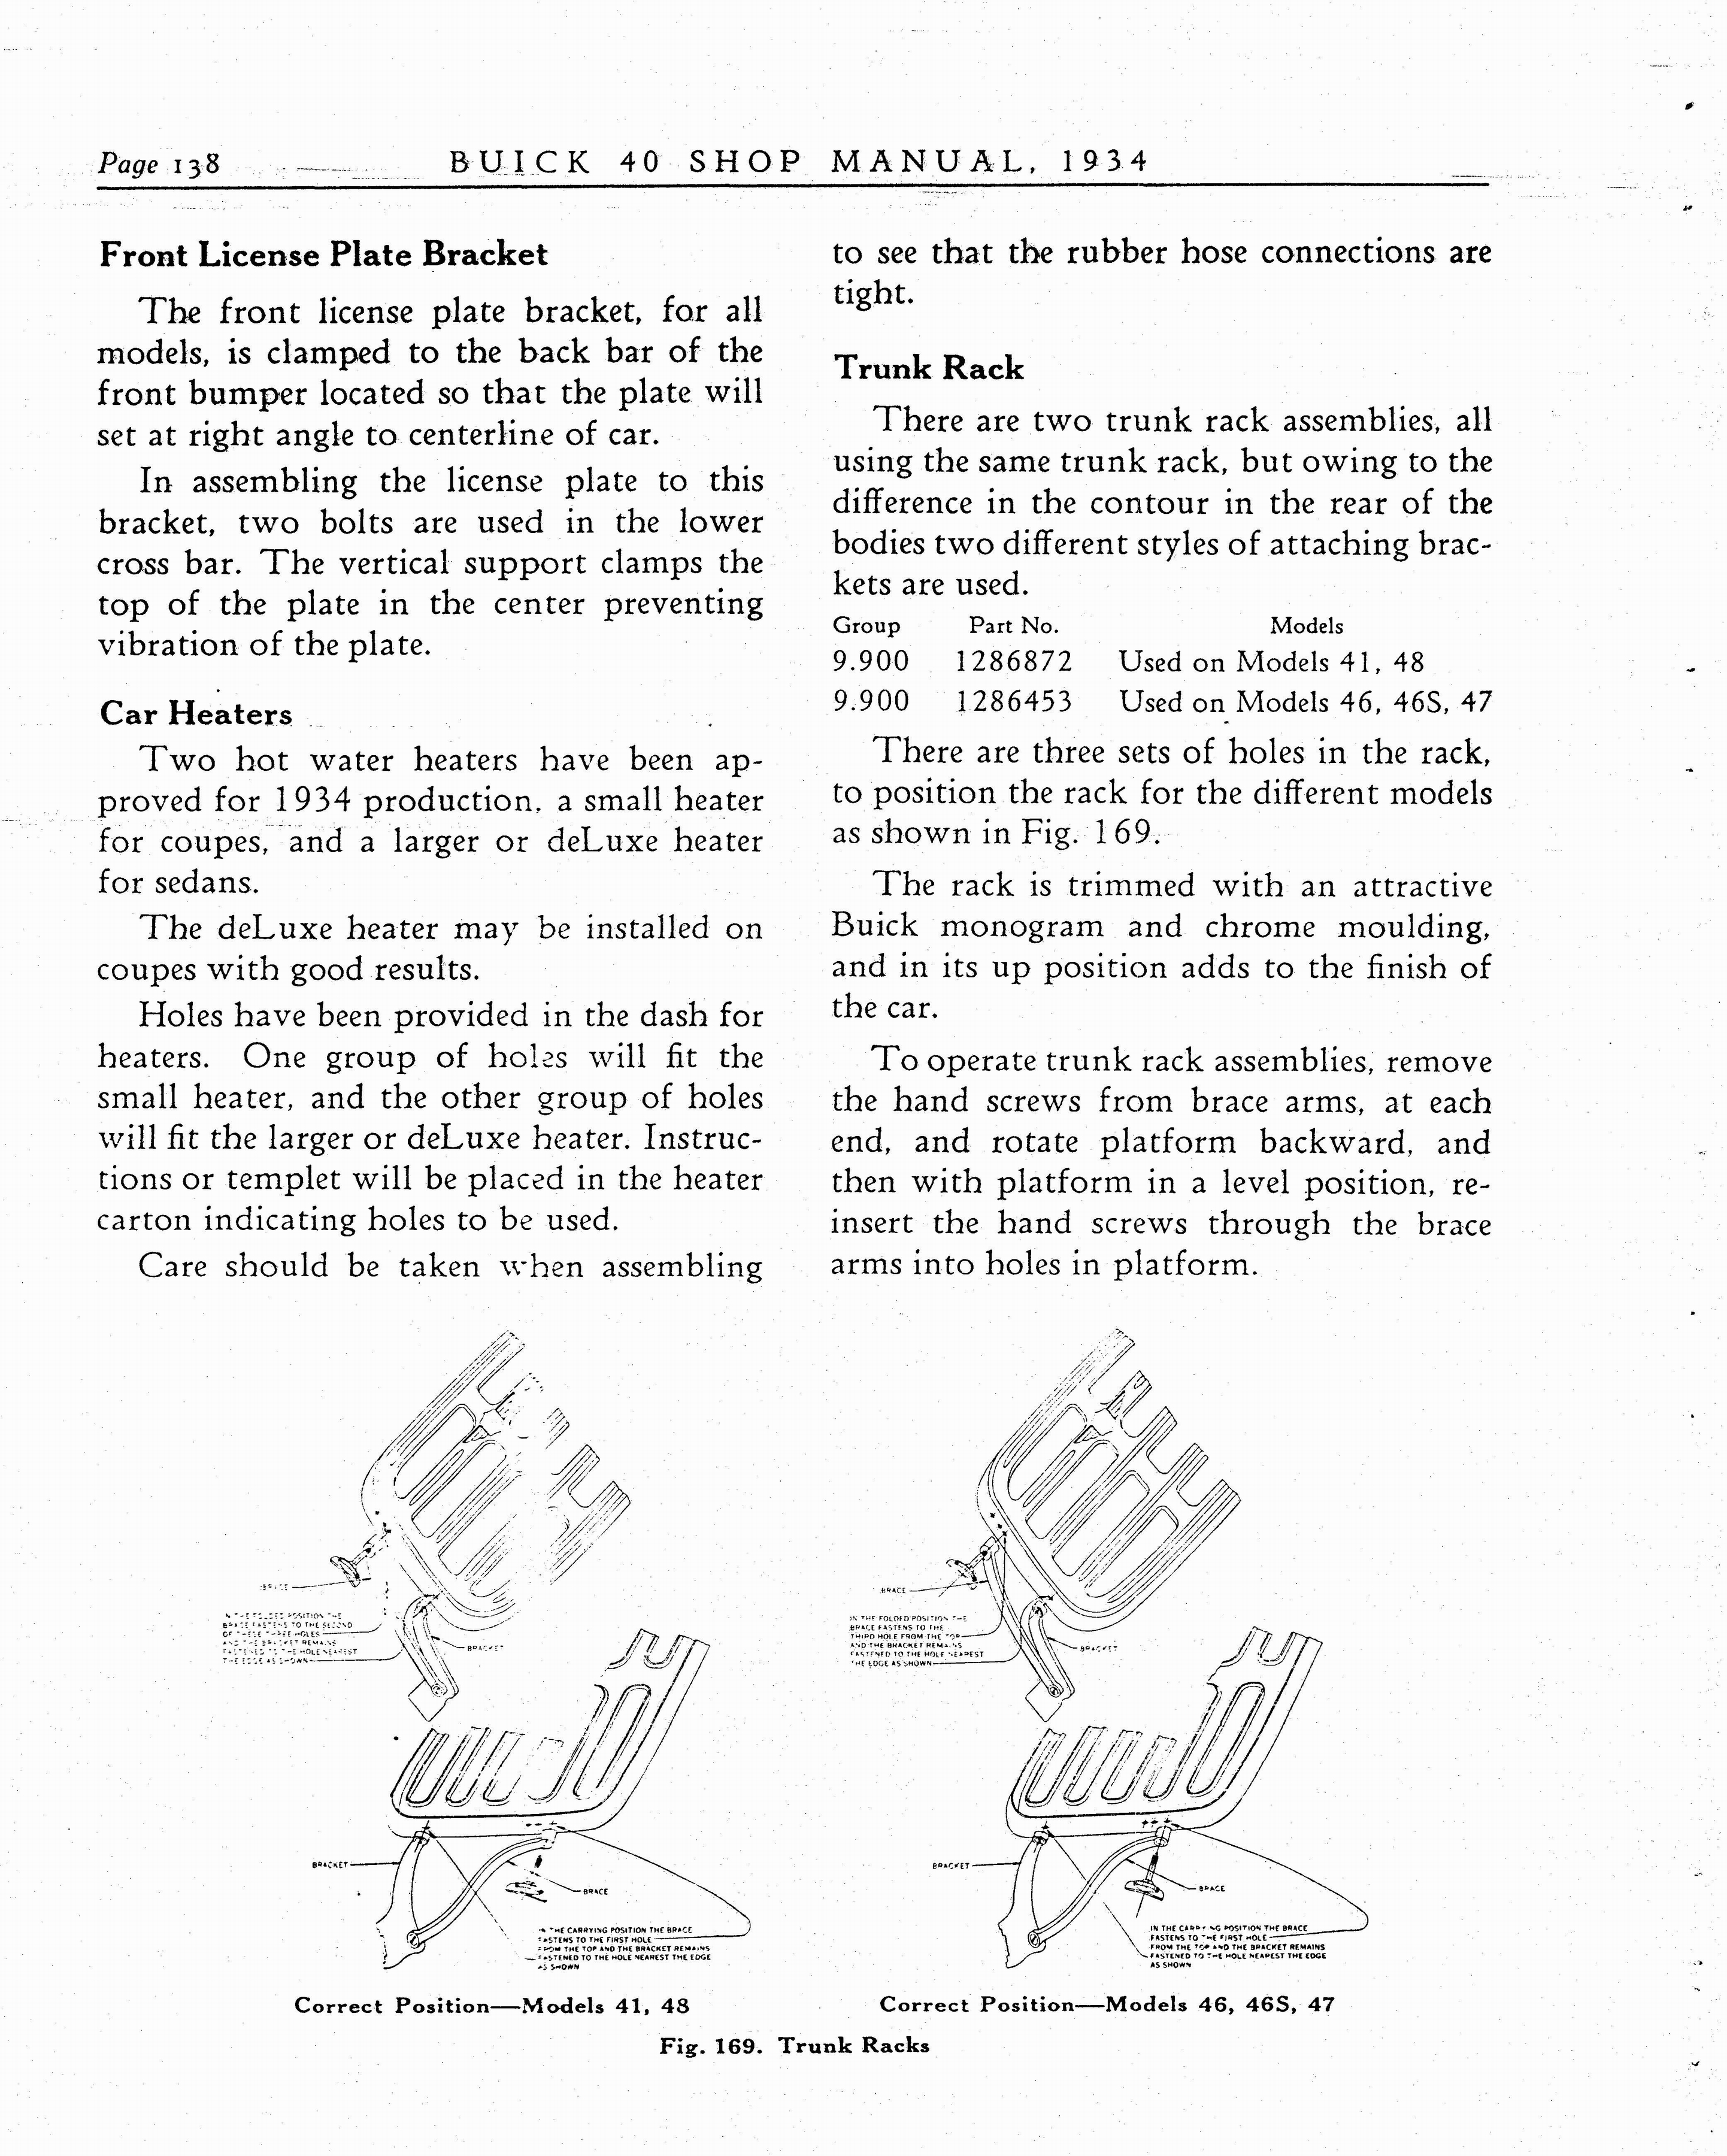 n_1934 Buick Series 40 Shop Manual_Page_139.jpg